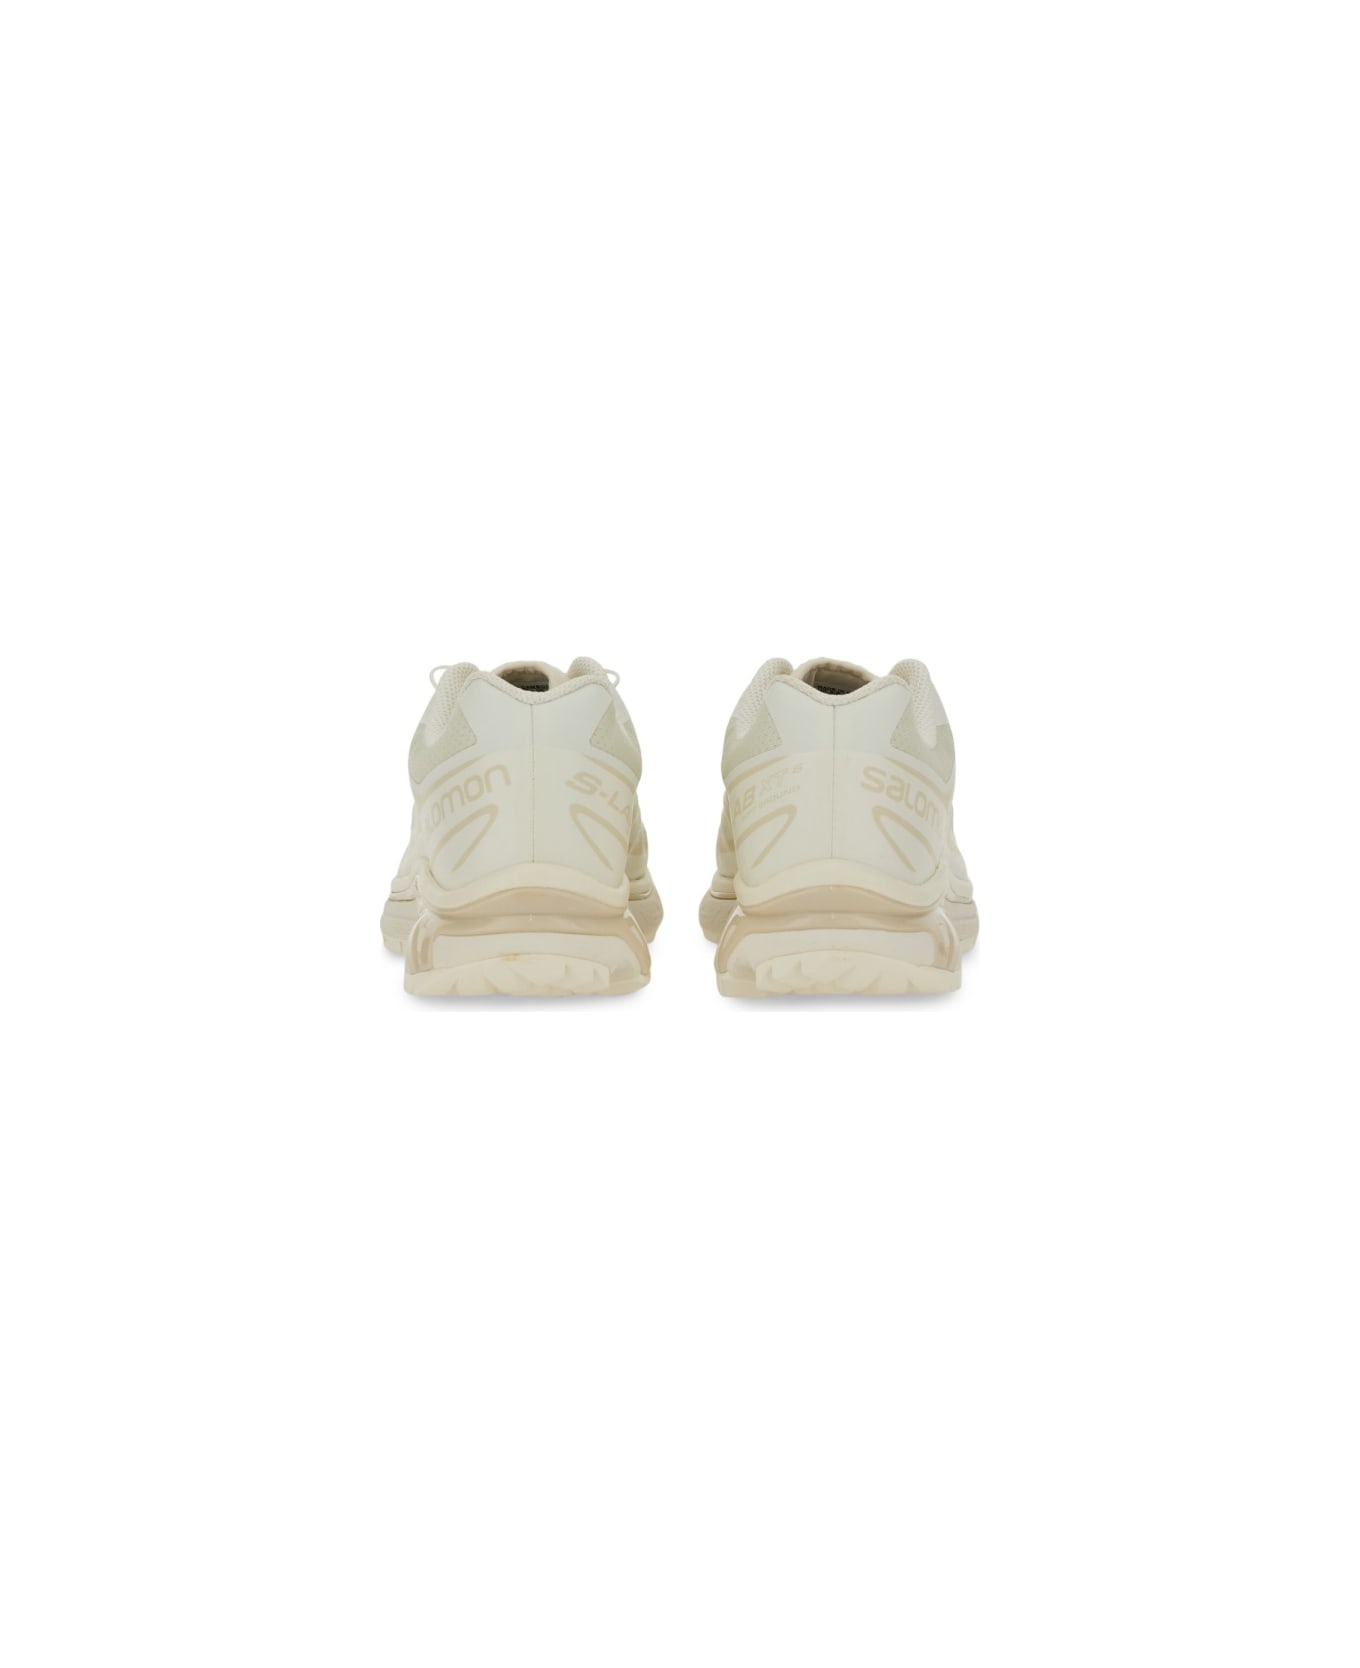 Salomon Sneaker "xt-6" - WHITE